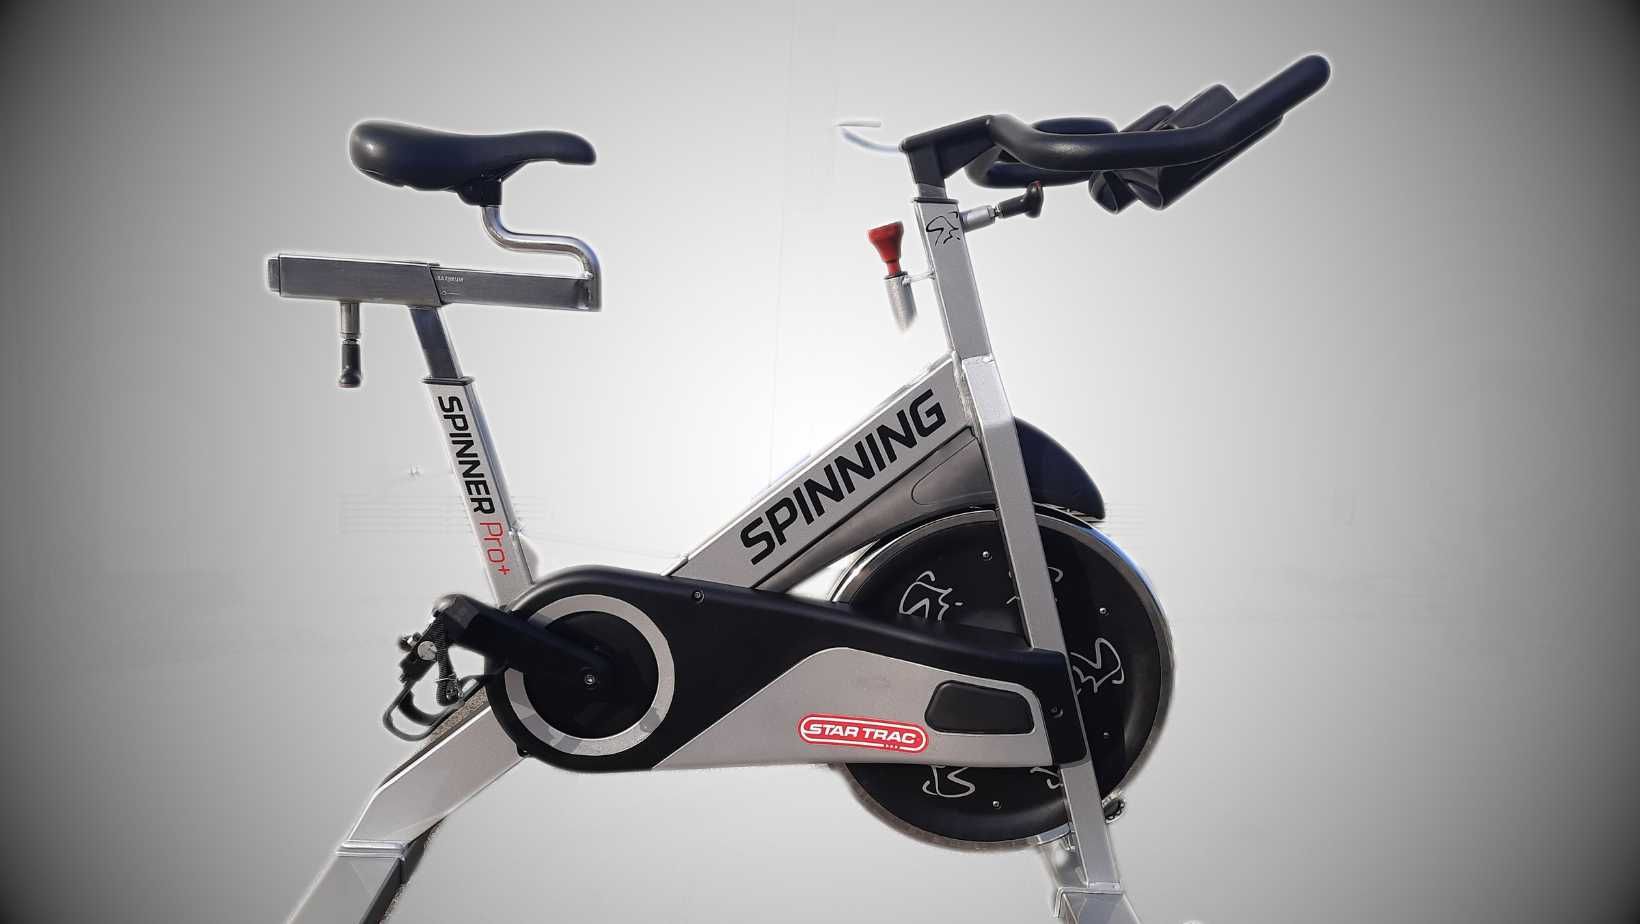 Profesjonalny rower do spinningu Star Trac Pro+